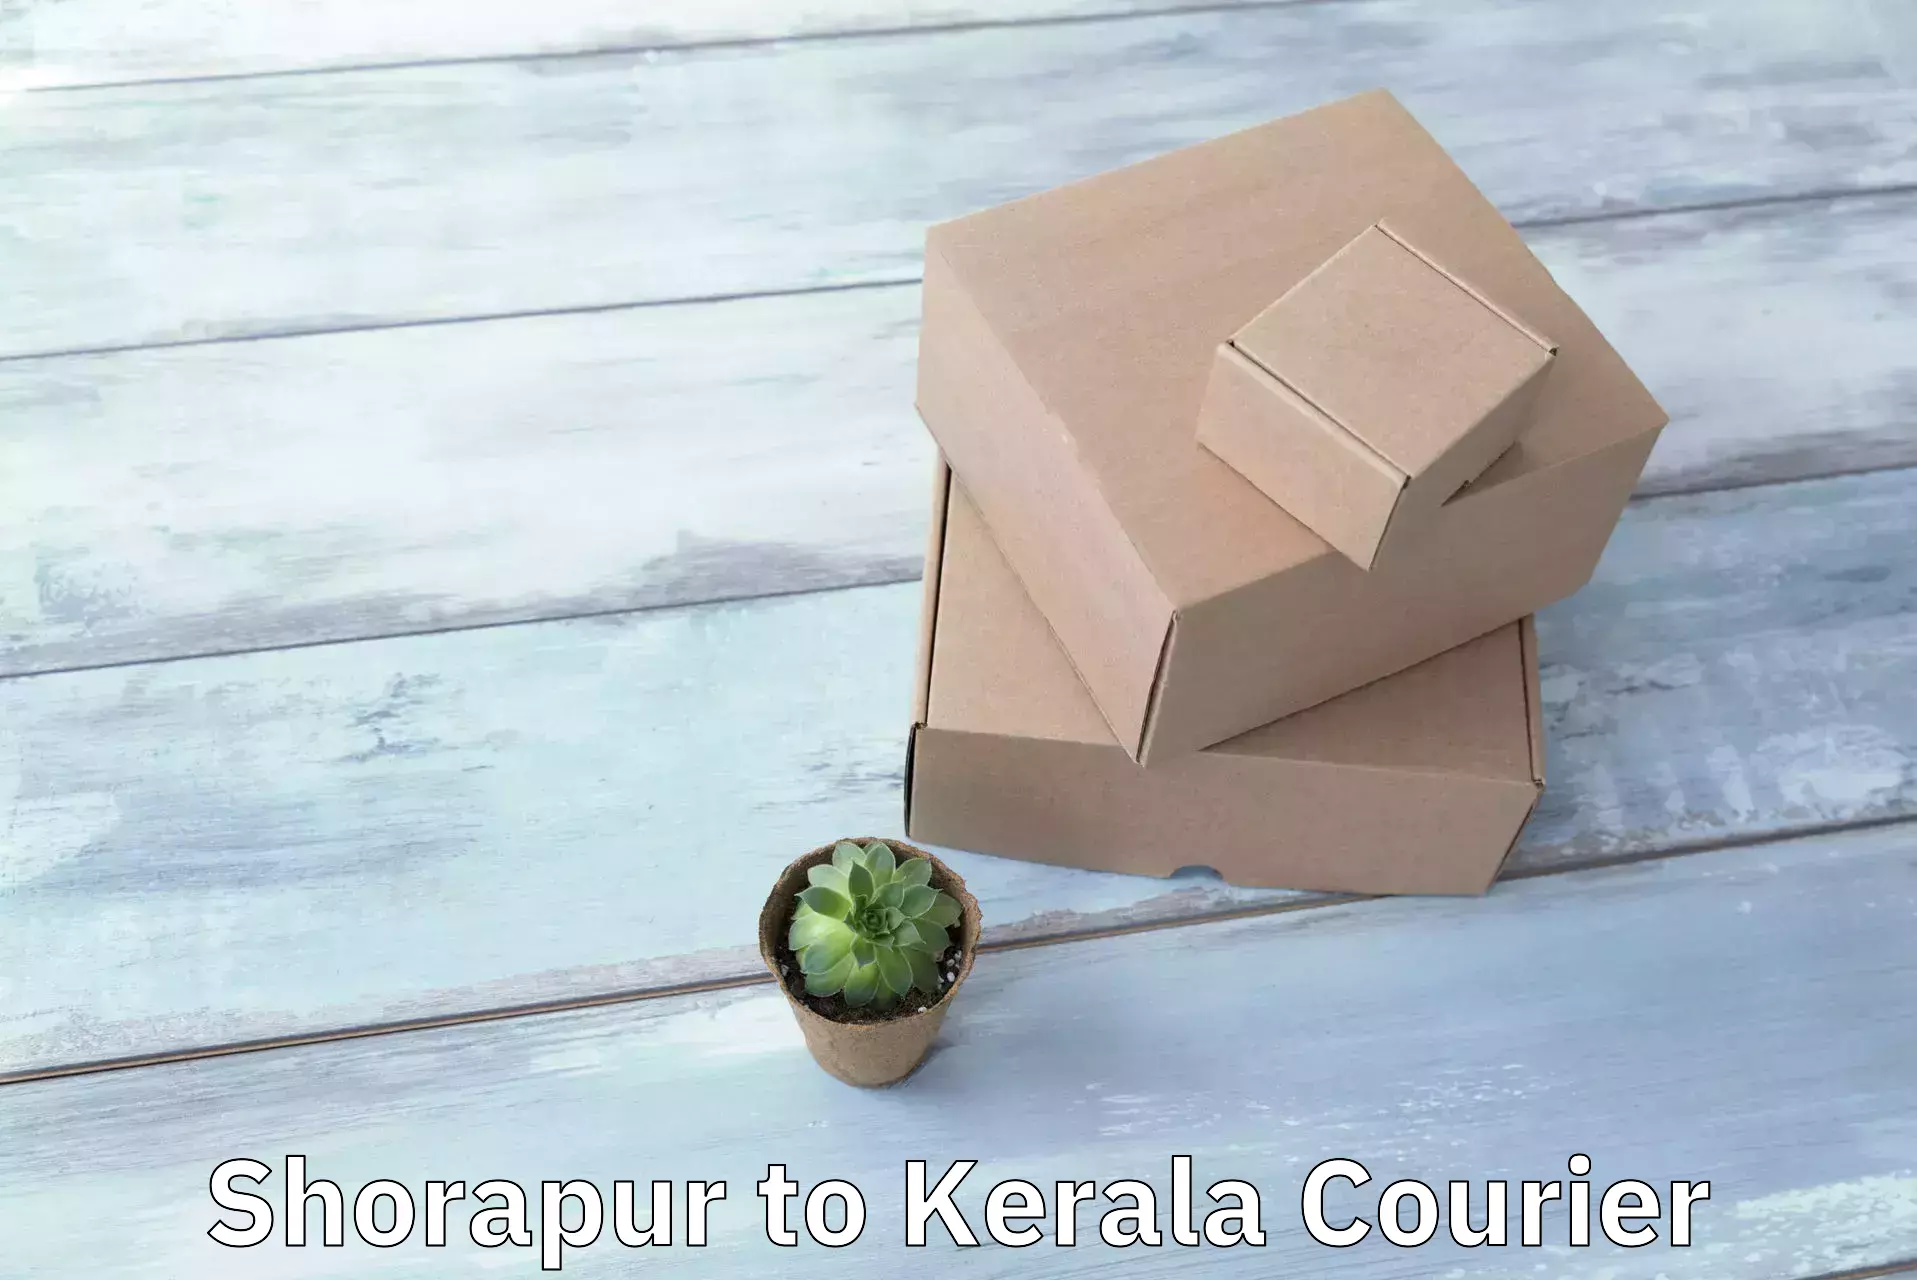 Efficient logistics management in Shorapur to Kerala